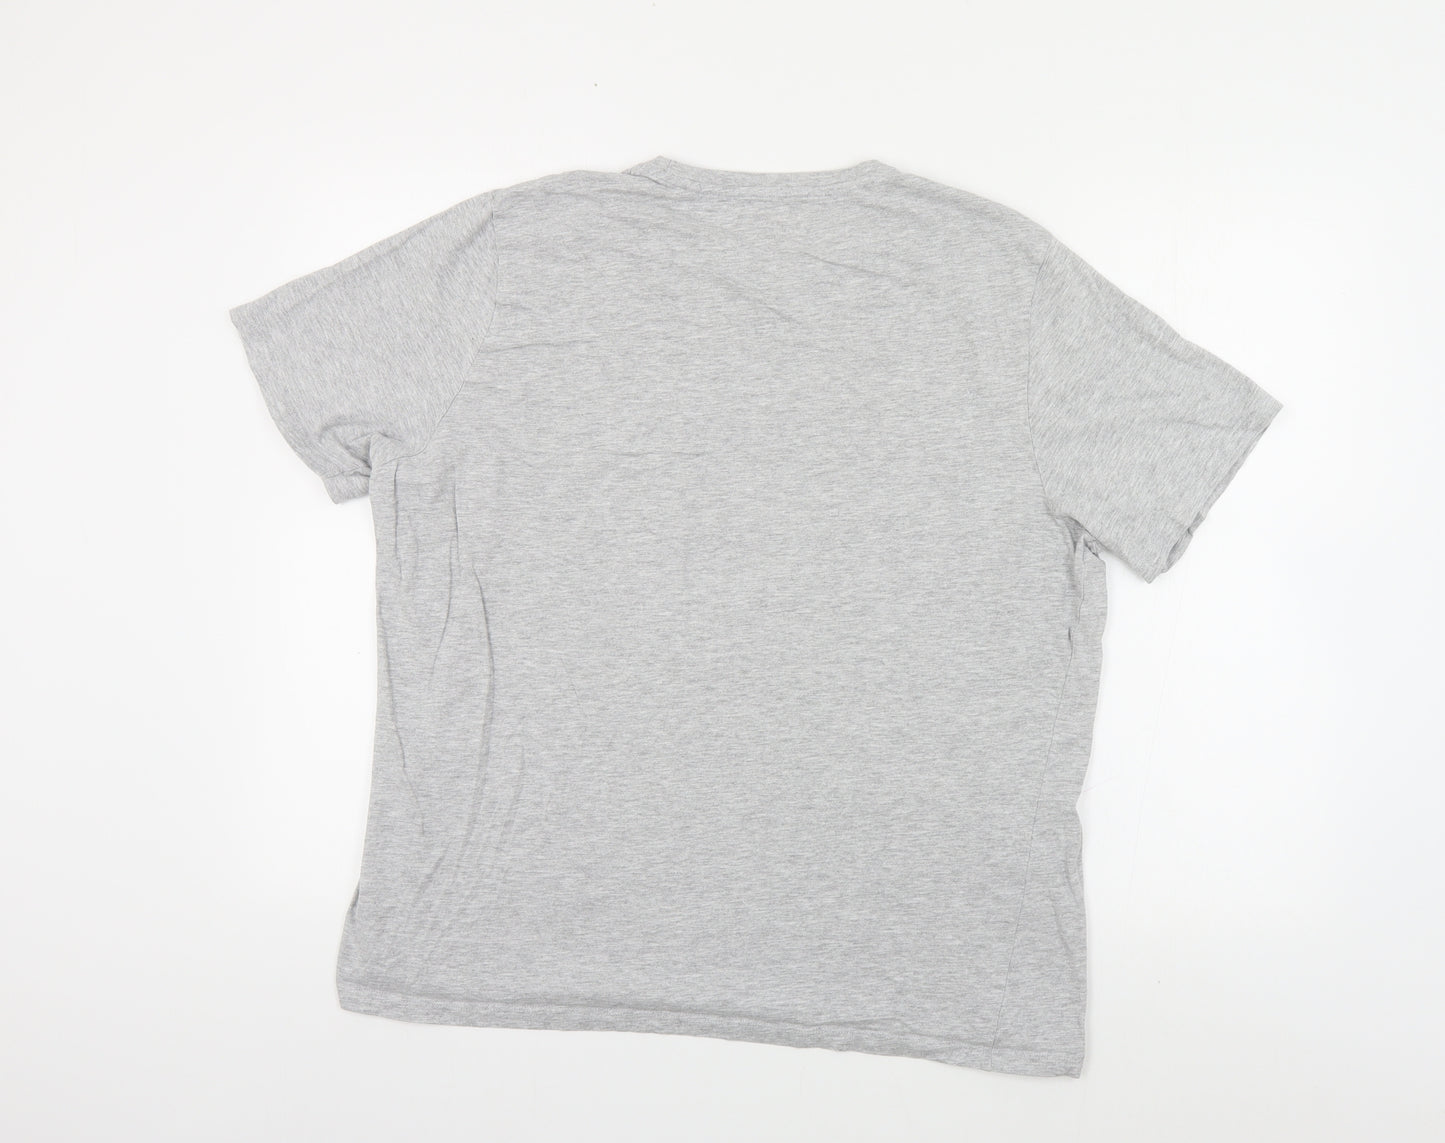 Matalan Mens Grey Cotton T-Shirt Size 2XL Crew Neck - Florida State